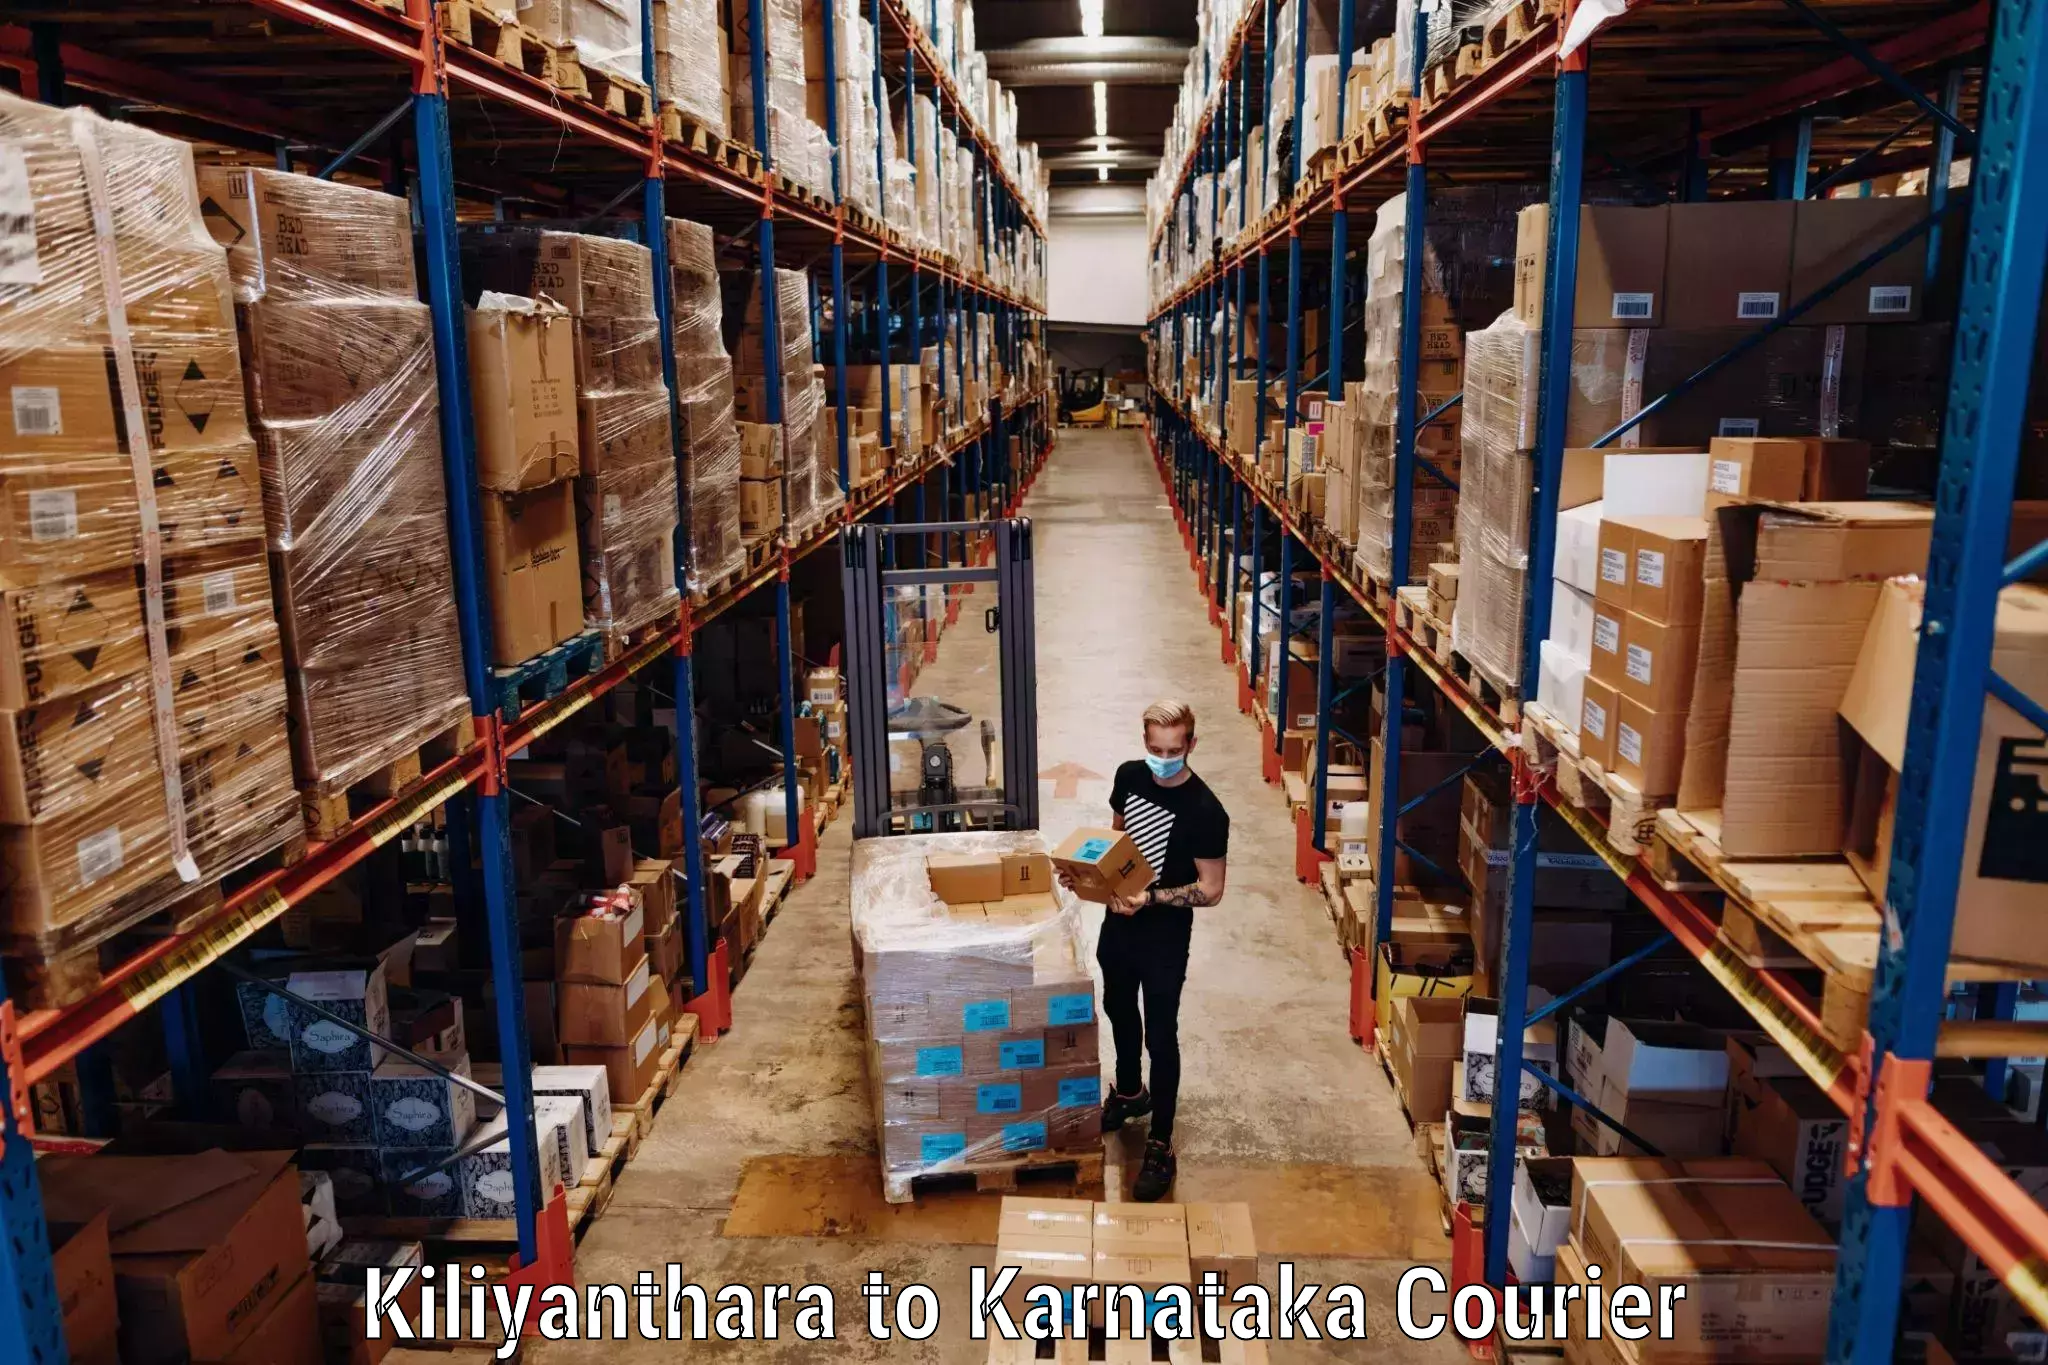 Luggage transfer service Kiliyanthara to Yenepoya Mangalore